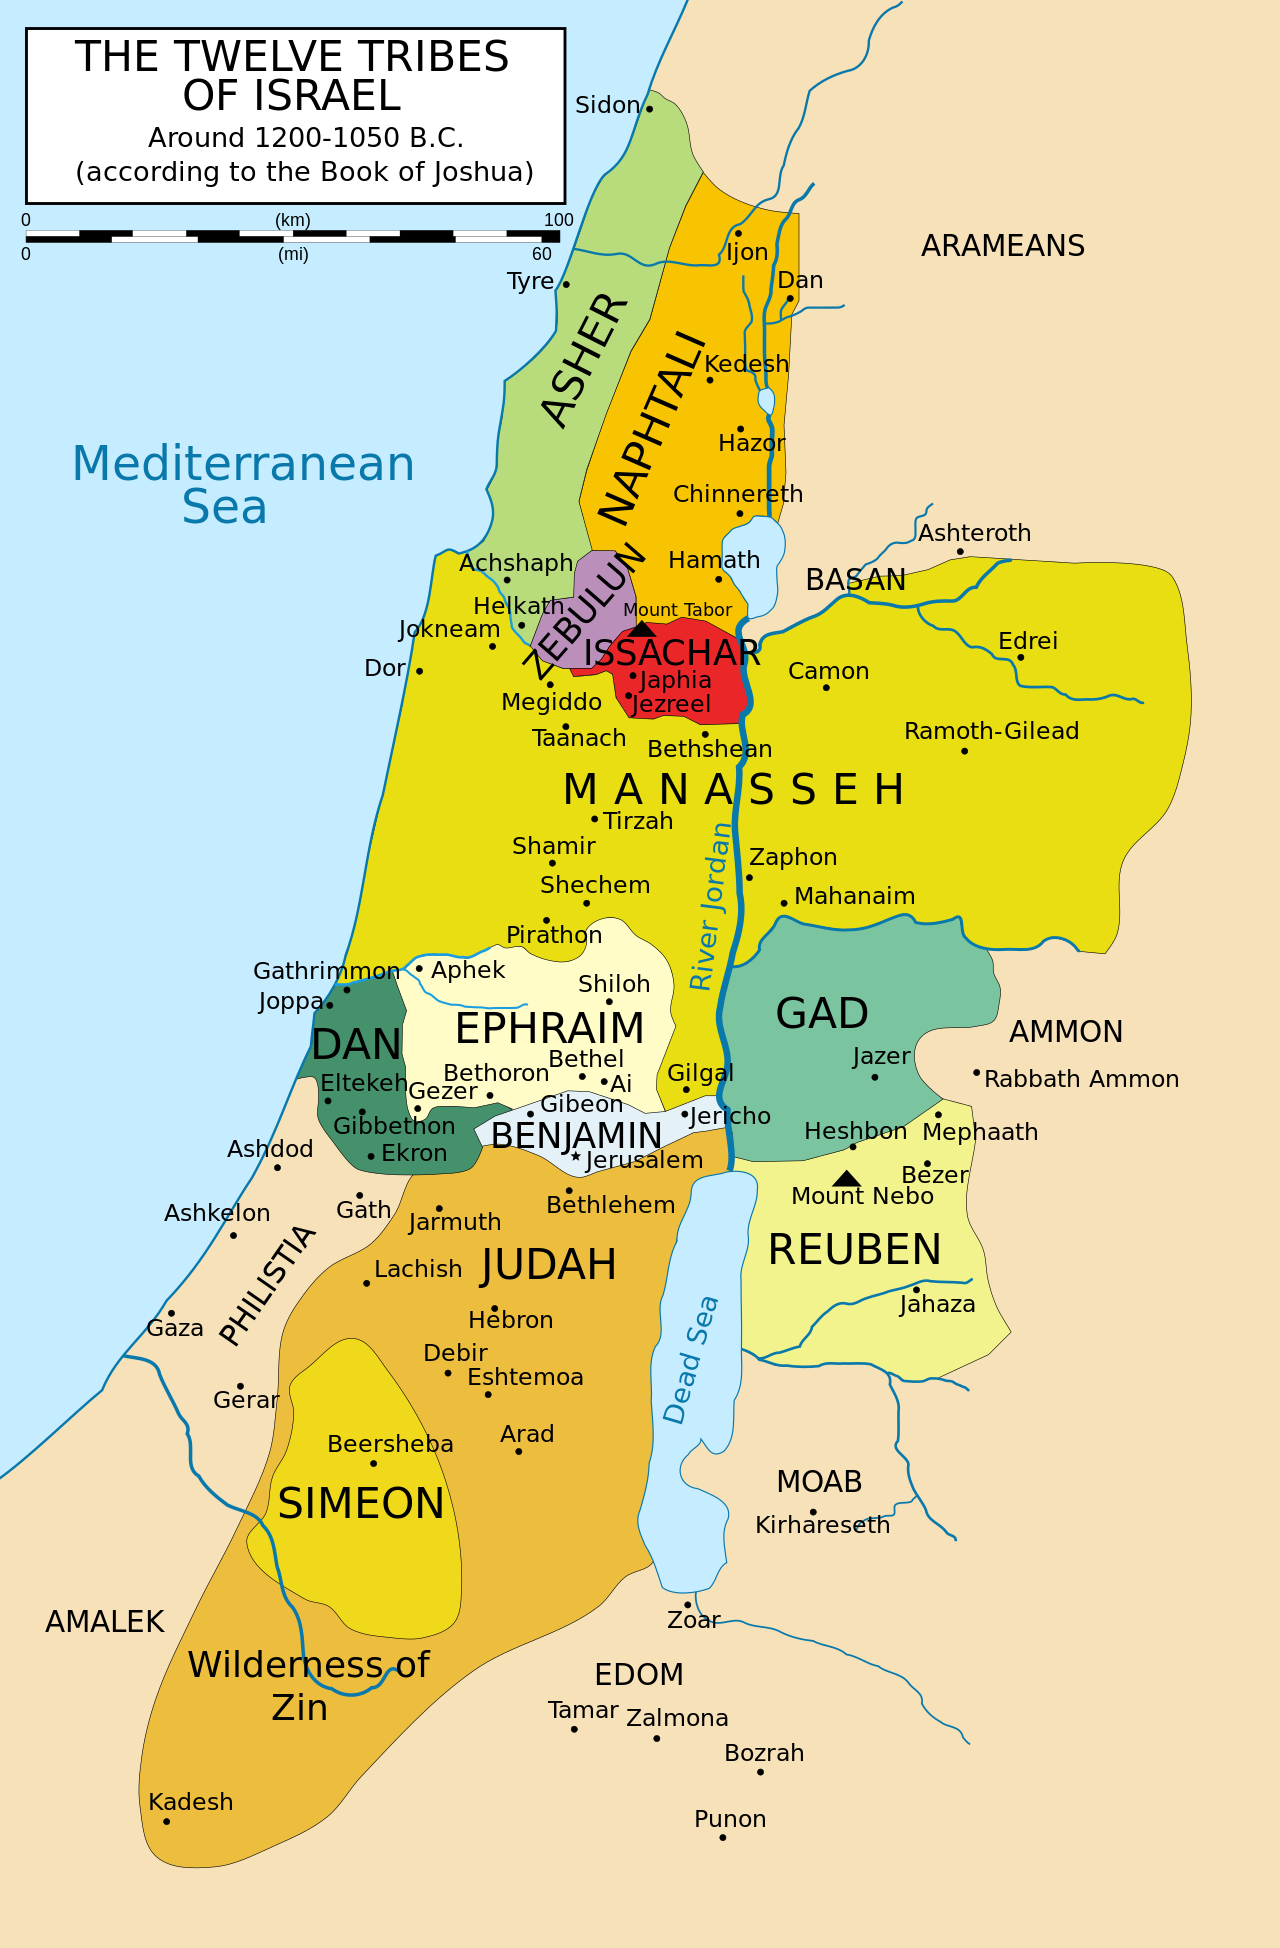 Peta dua belas suku Israel menurut Kitab Yosua